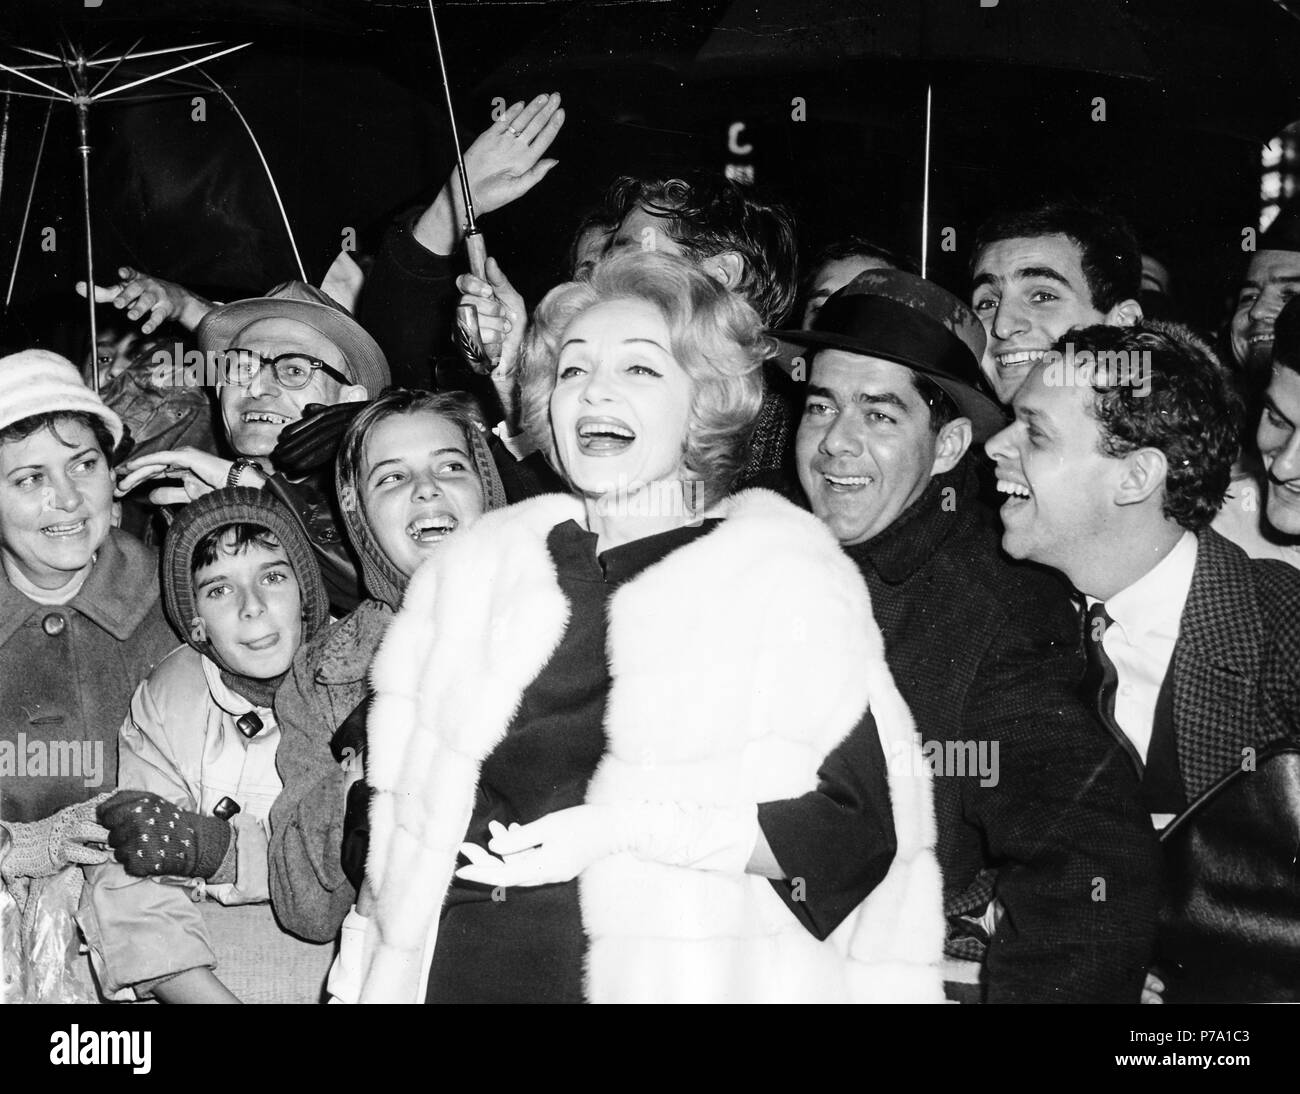 Marlene Dietrich, entouré de fans à l'extérieur de la RKO Palace Theatre, New York, 19 décembre 1961 Banque D'Images